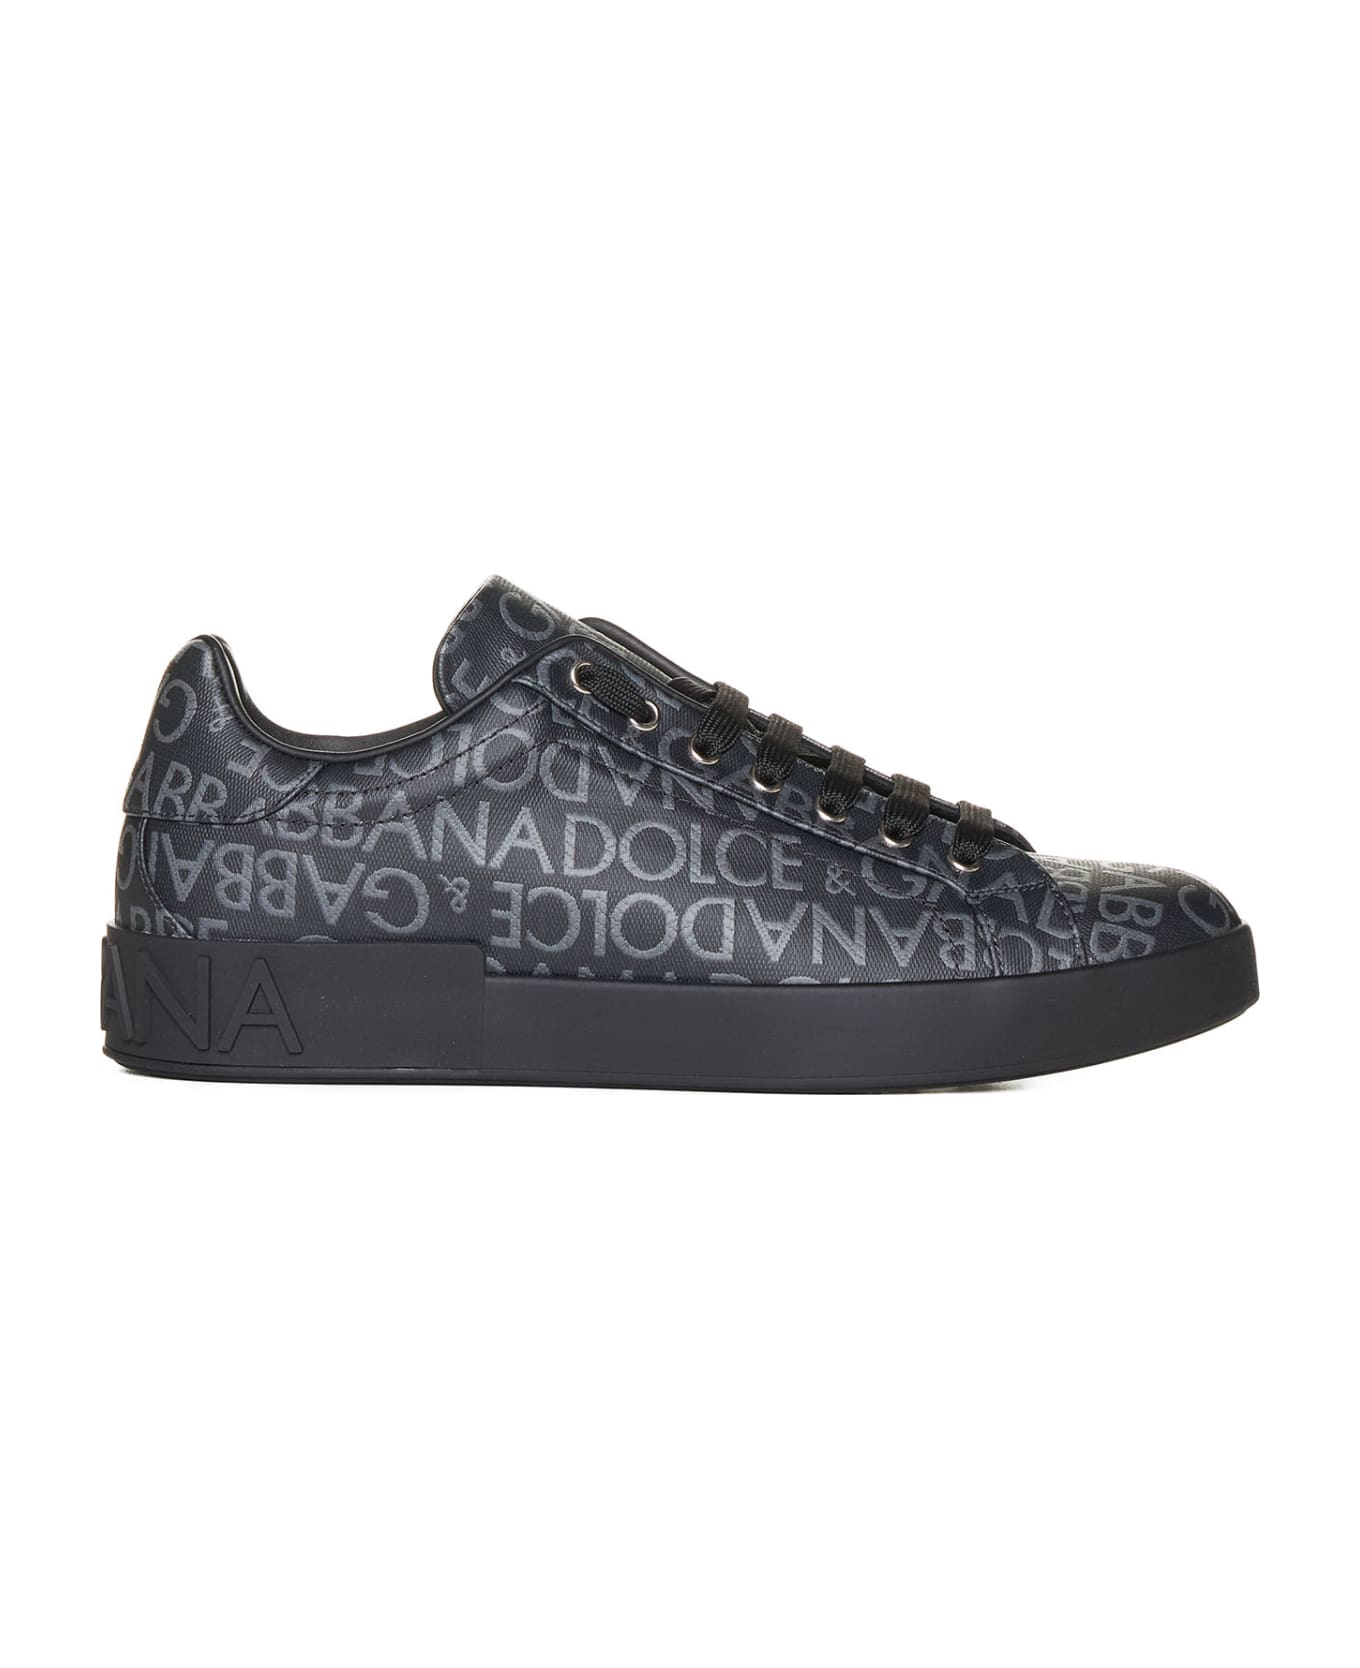 Dolce & Gabbana Portofino Jacquard Sneakers - Black / Grey